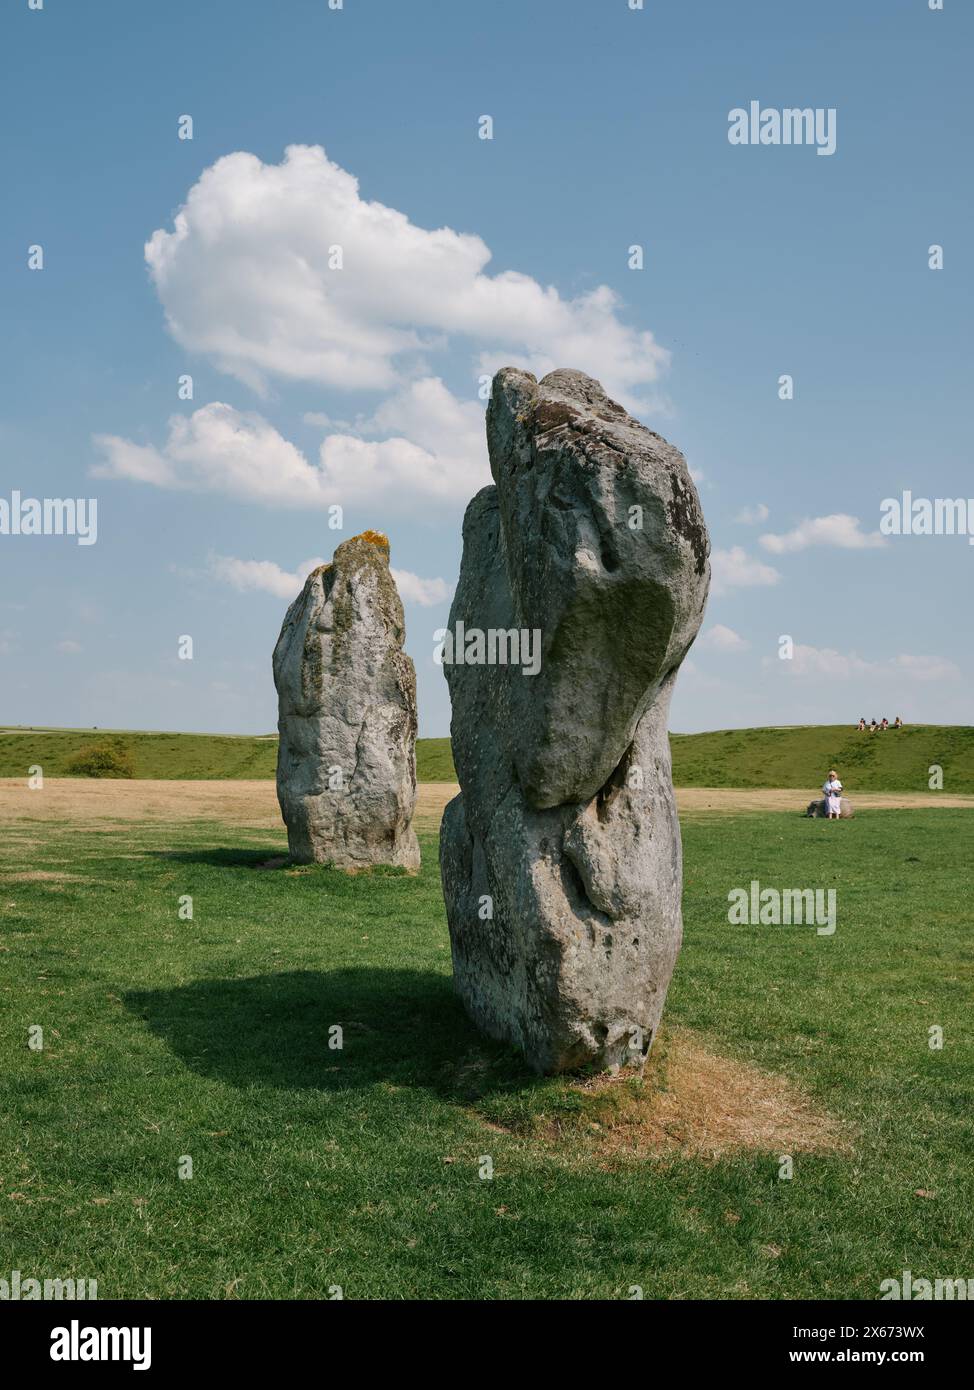 Cercle intérieur sud d'Avebury henge néolithique à Avebury, Wiltshire, Angleterre Royaume-Uni - cercle de pierre mégalithique Banque D'Images